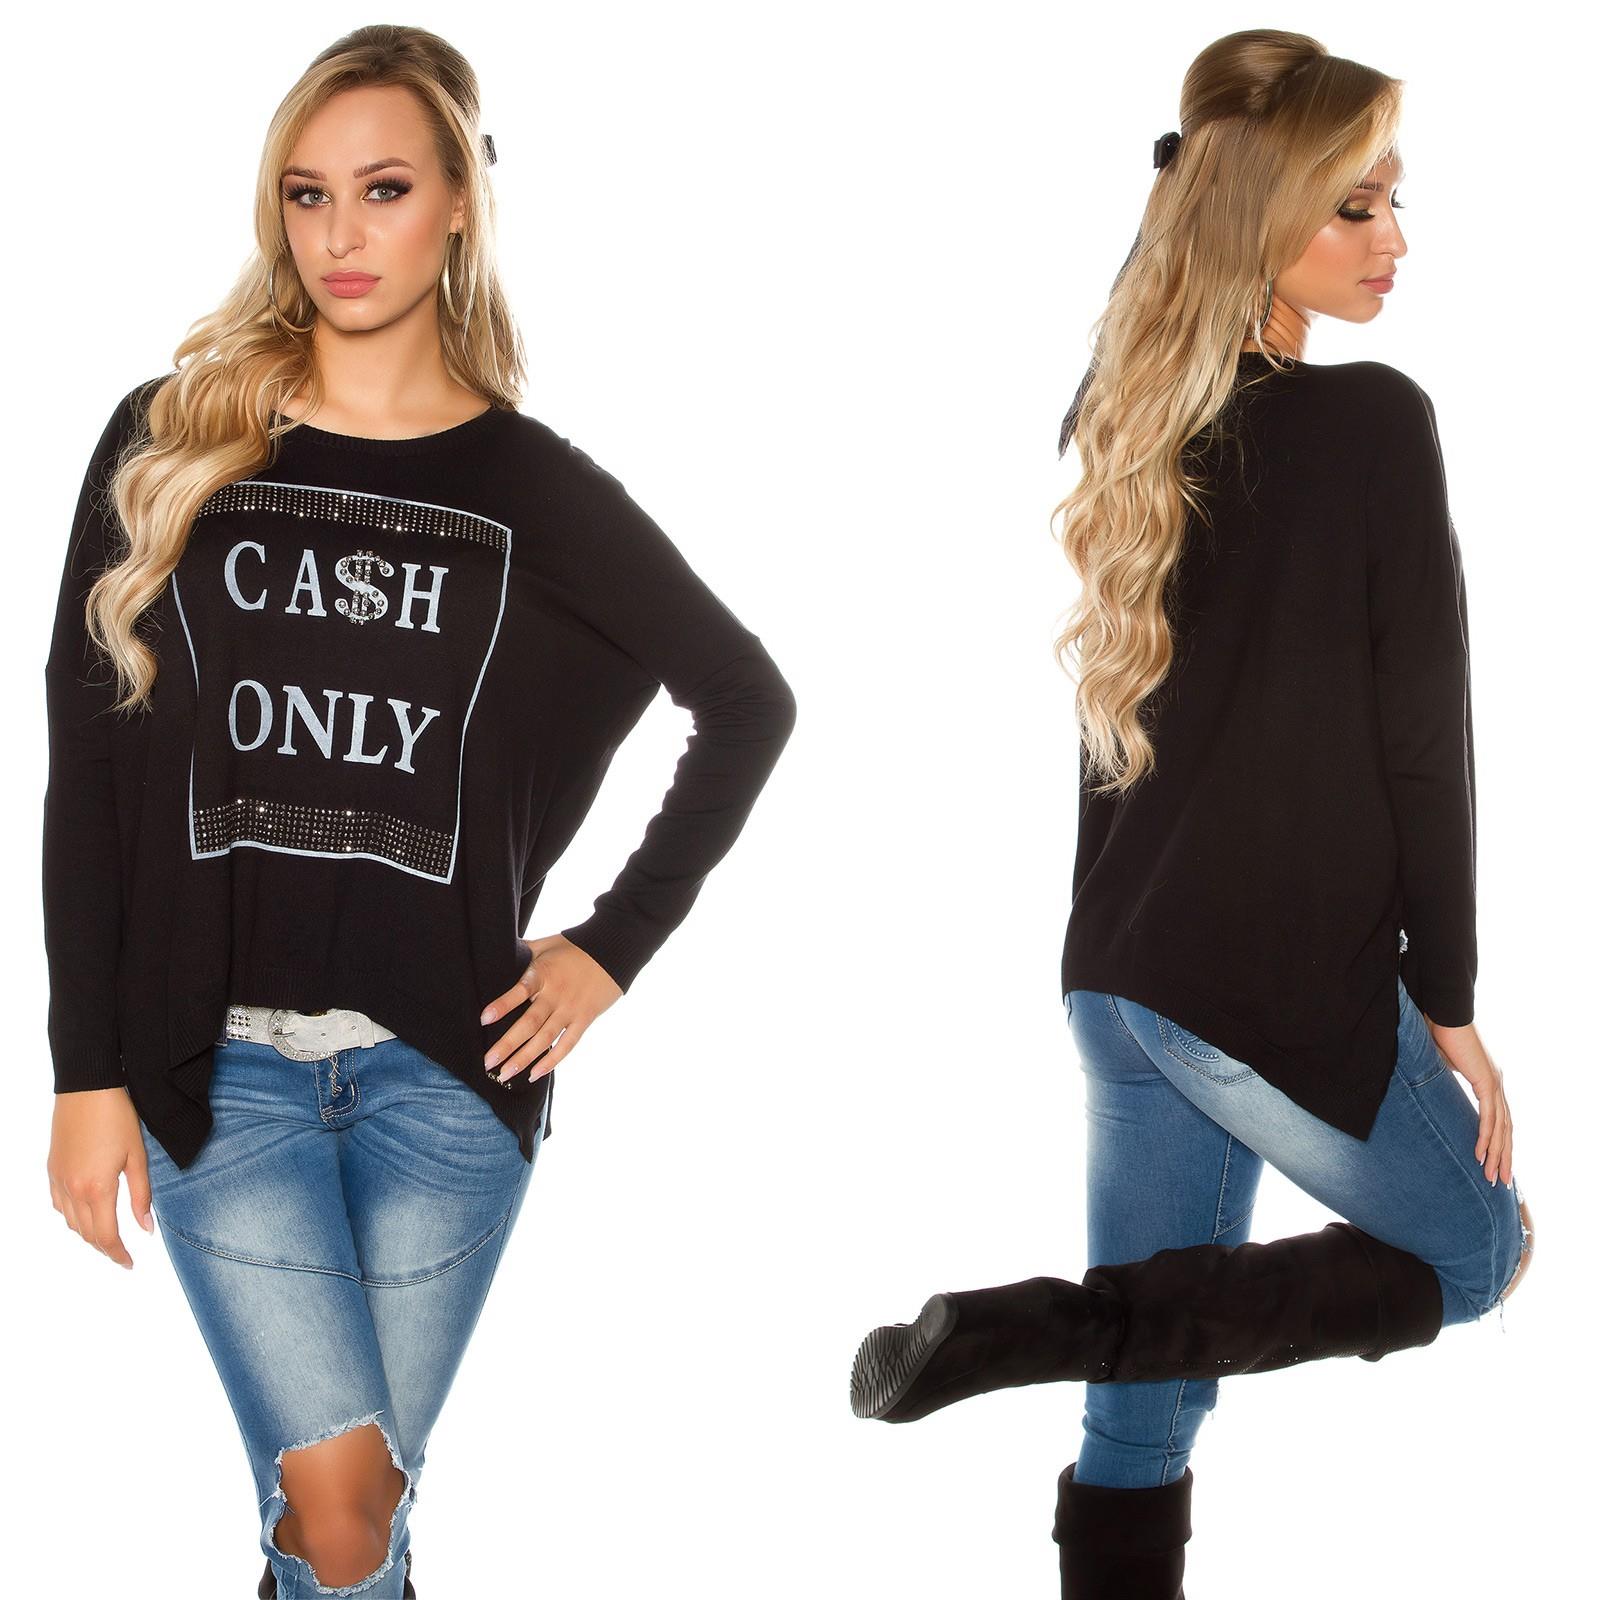 Dámský oversize svetr s nápisem "Cash only" Koucla černý Velikost: Univerzální